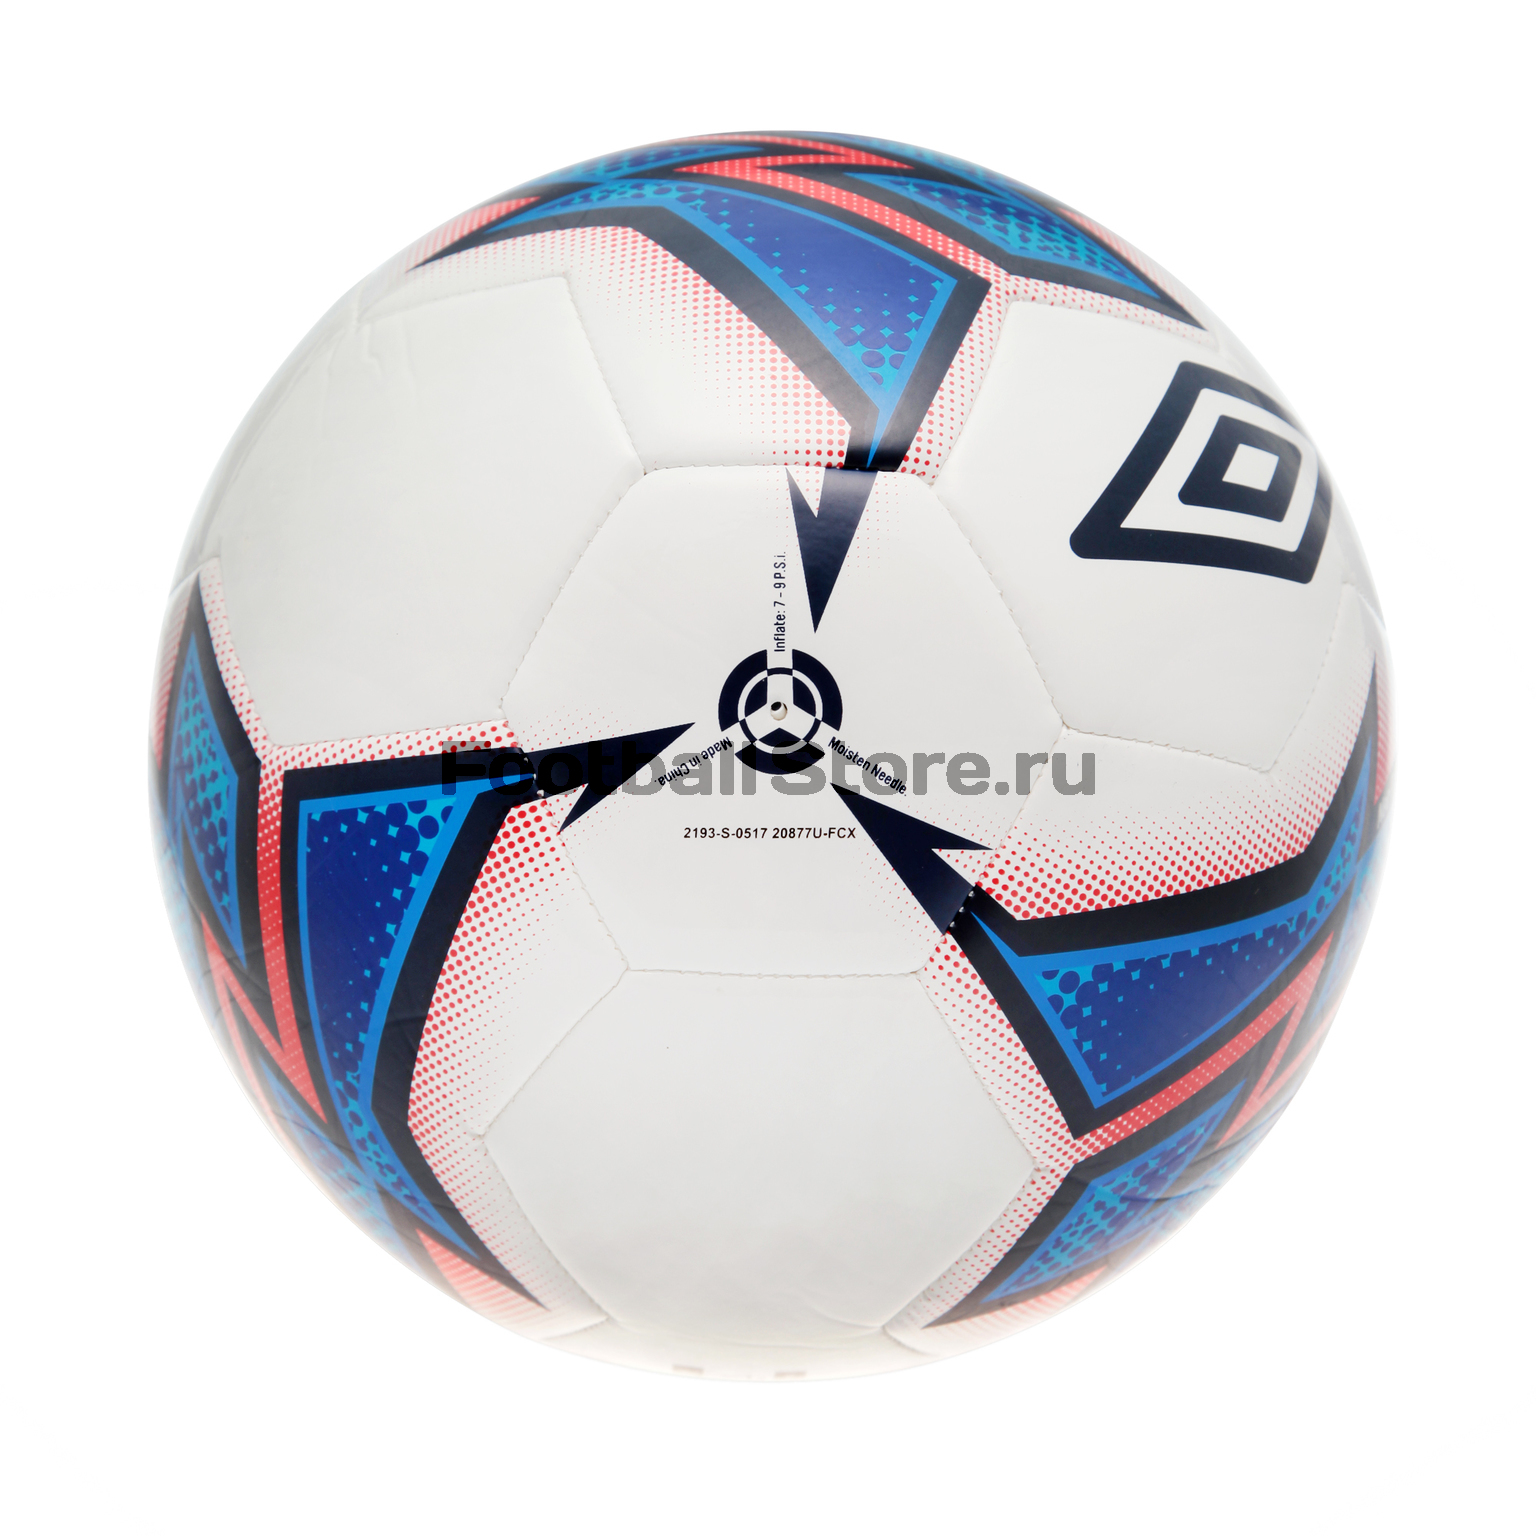 Футбольный мяч Umbro Trainer 20877U-2